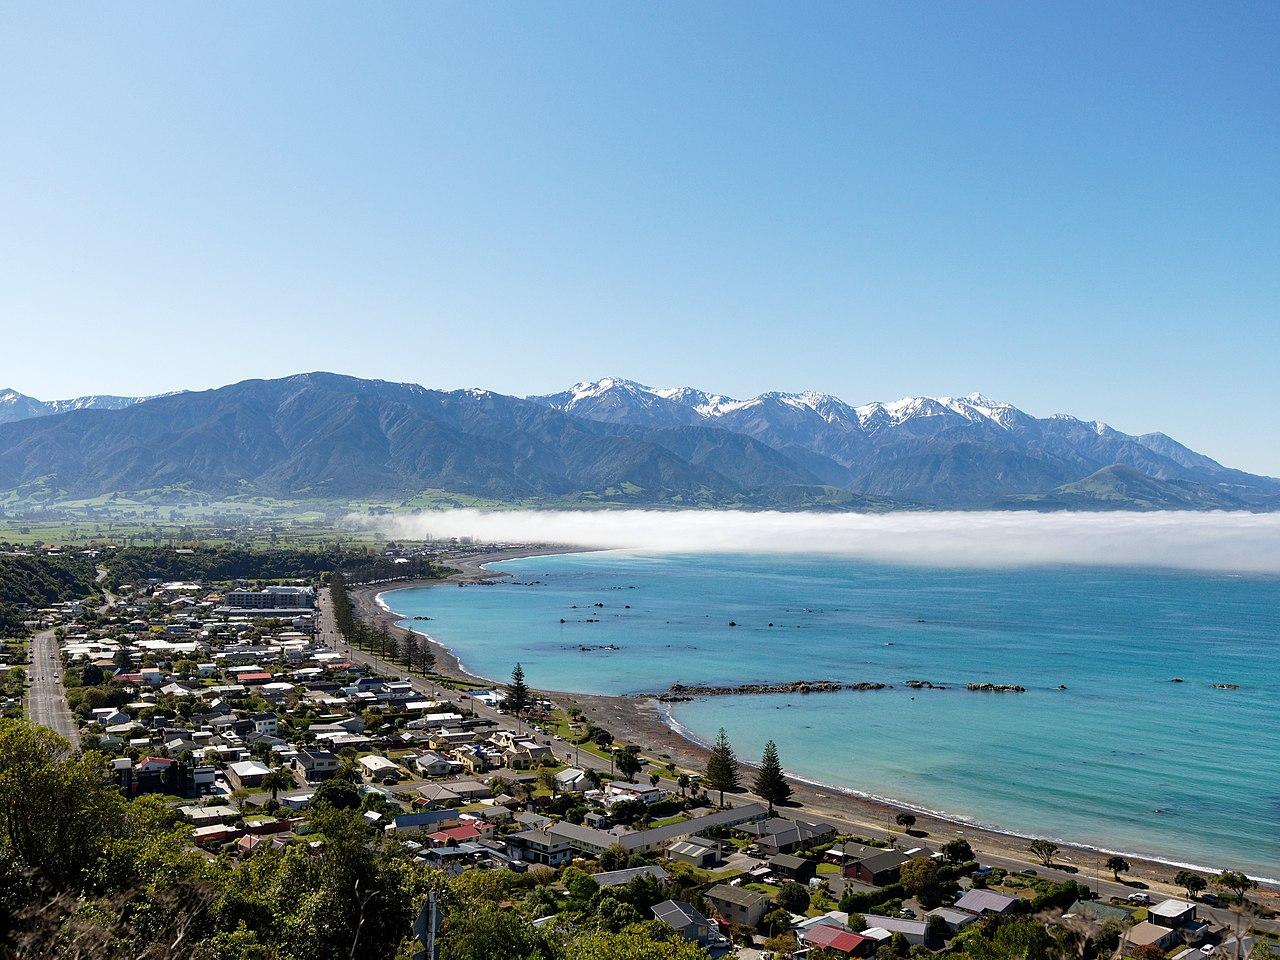 Kaikōura, New Zealand